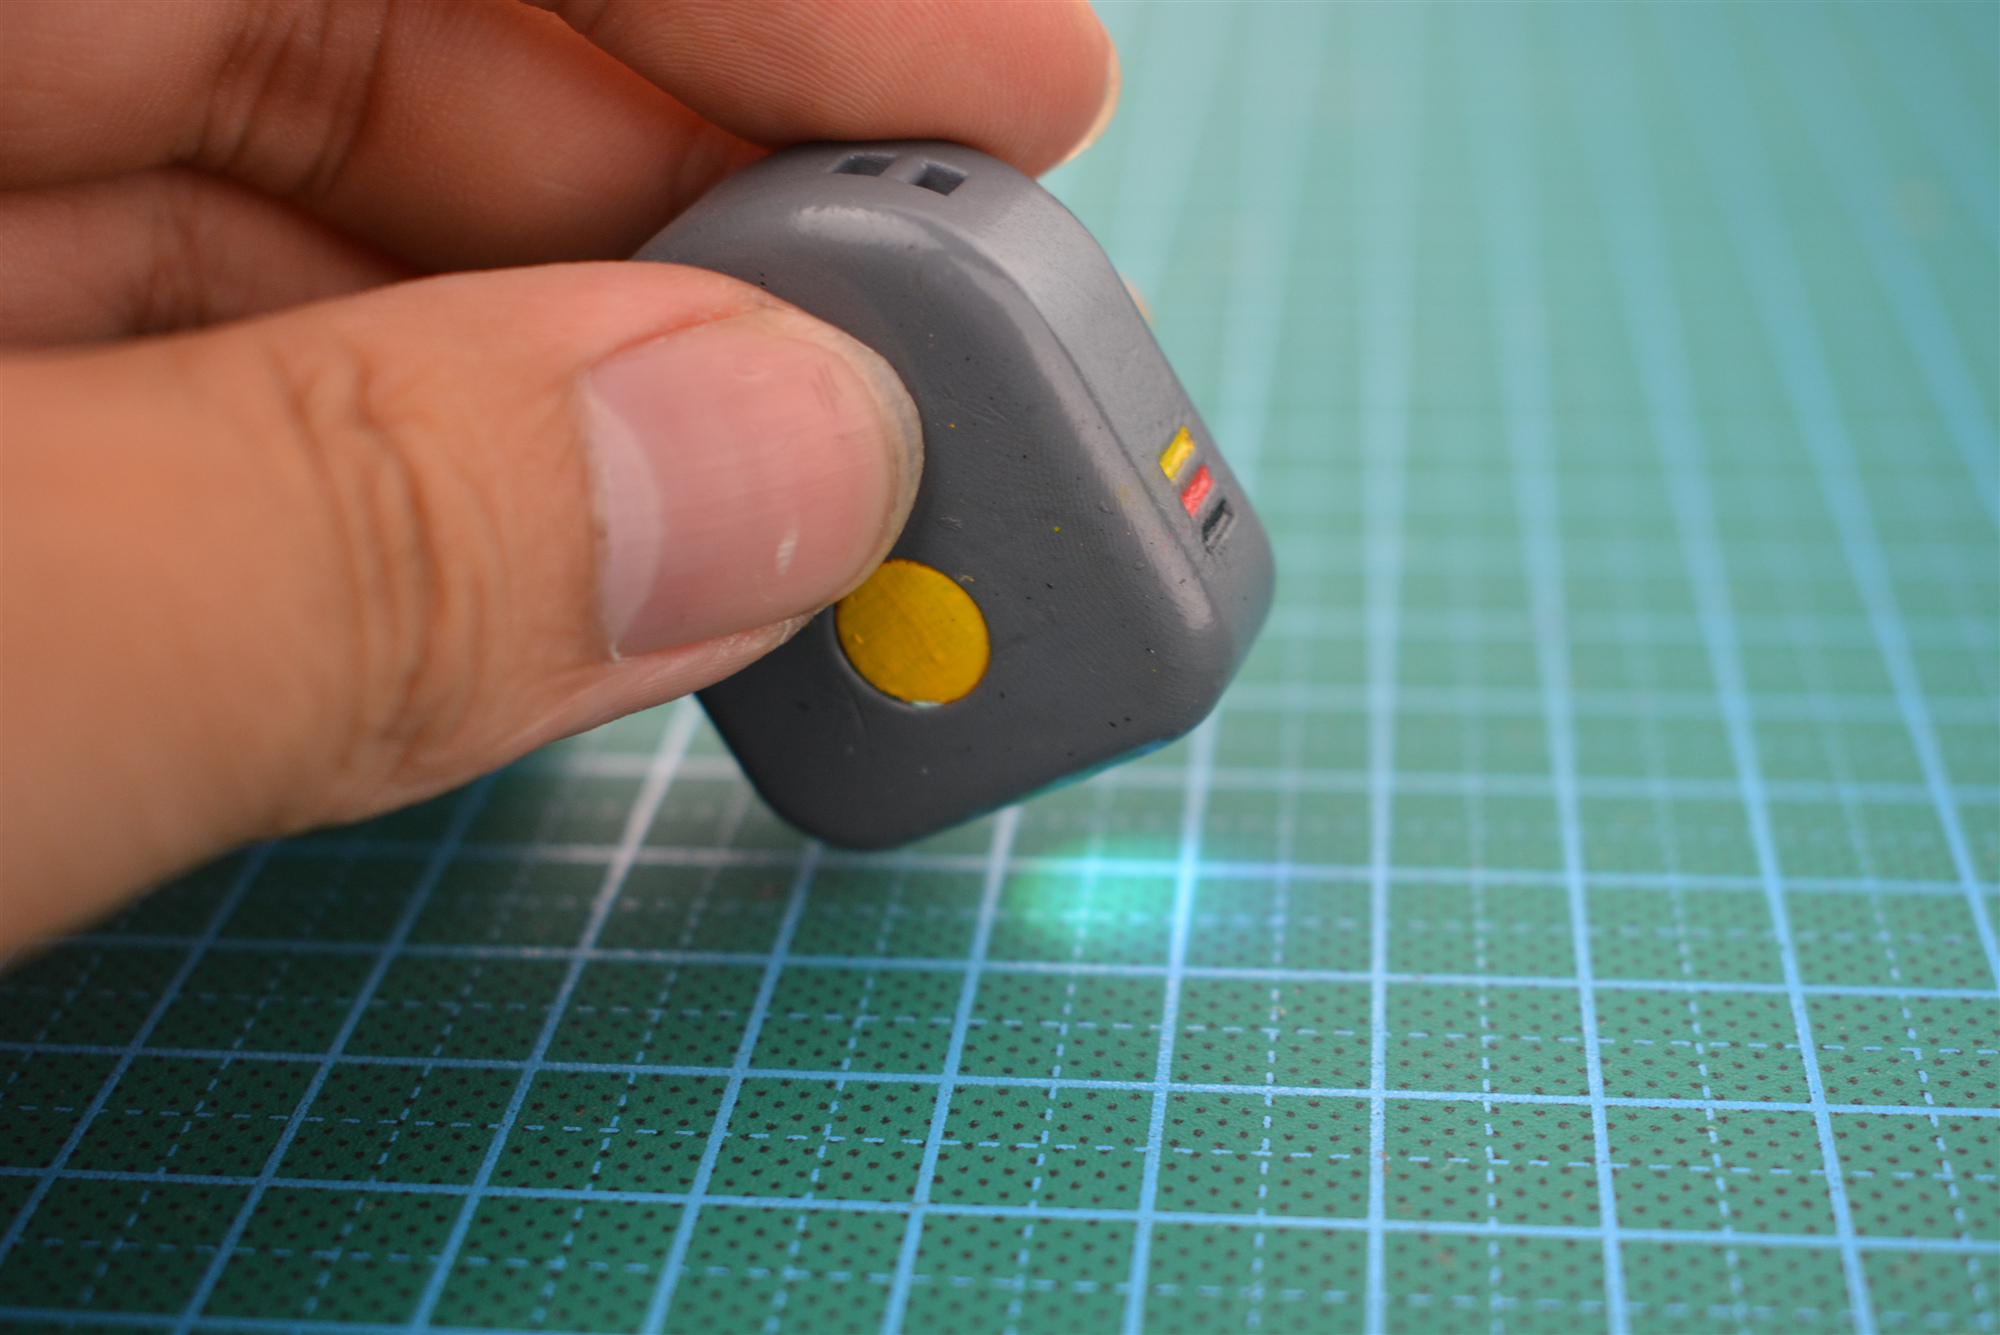 用颜色识别传感器做一个简单的拾色手电